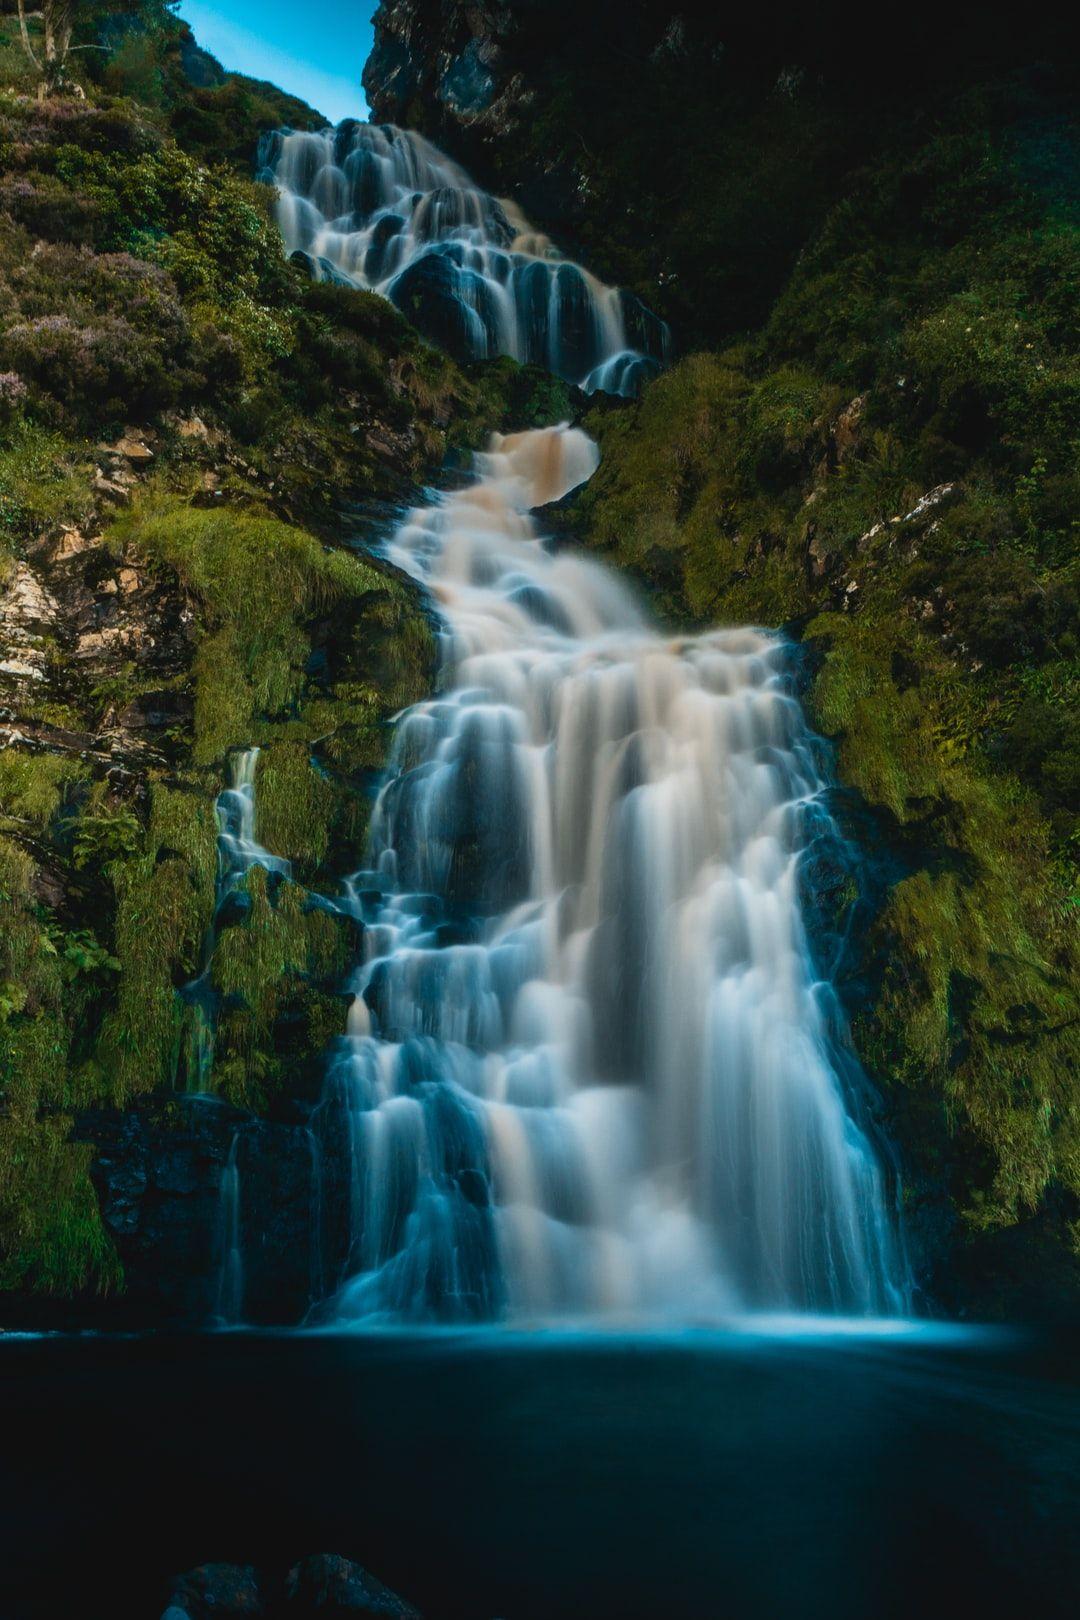 Ảnh thác nước xanh 1080x1620 - Hình ảnh thiên nhiên miễn phí